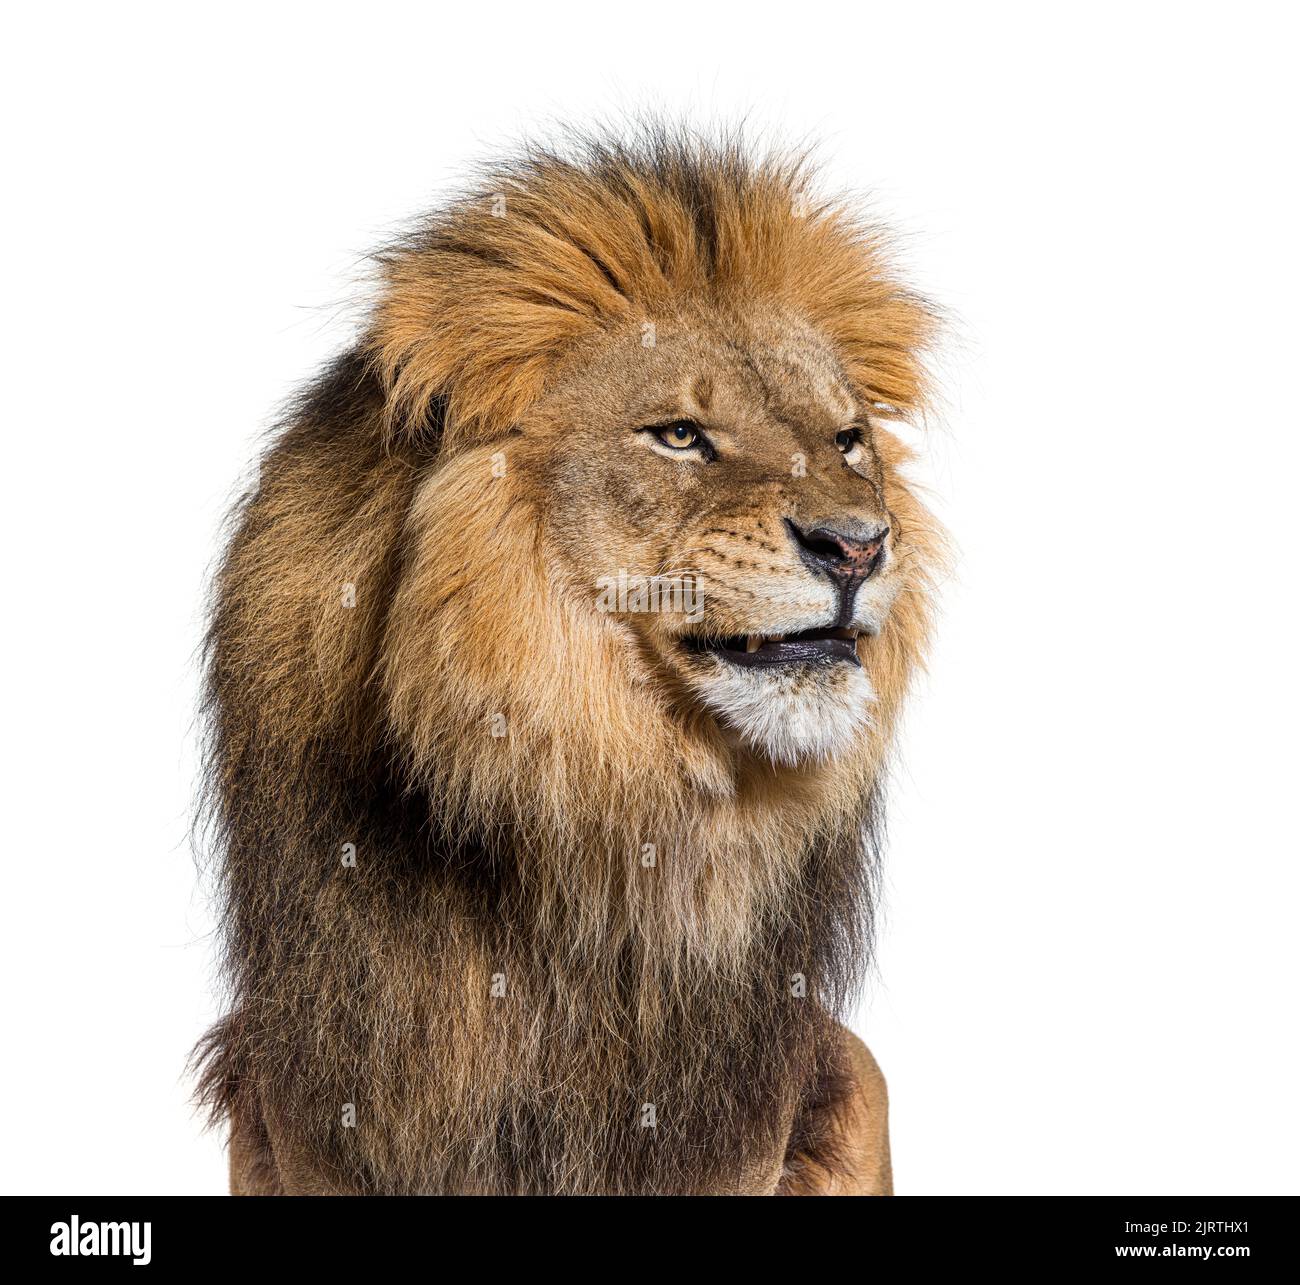 Molesto león masculino adulto haciendo una cara divertida, aislado sobre blanco Foto de stock